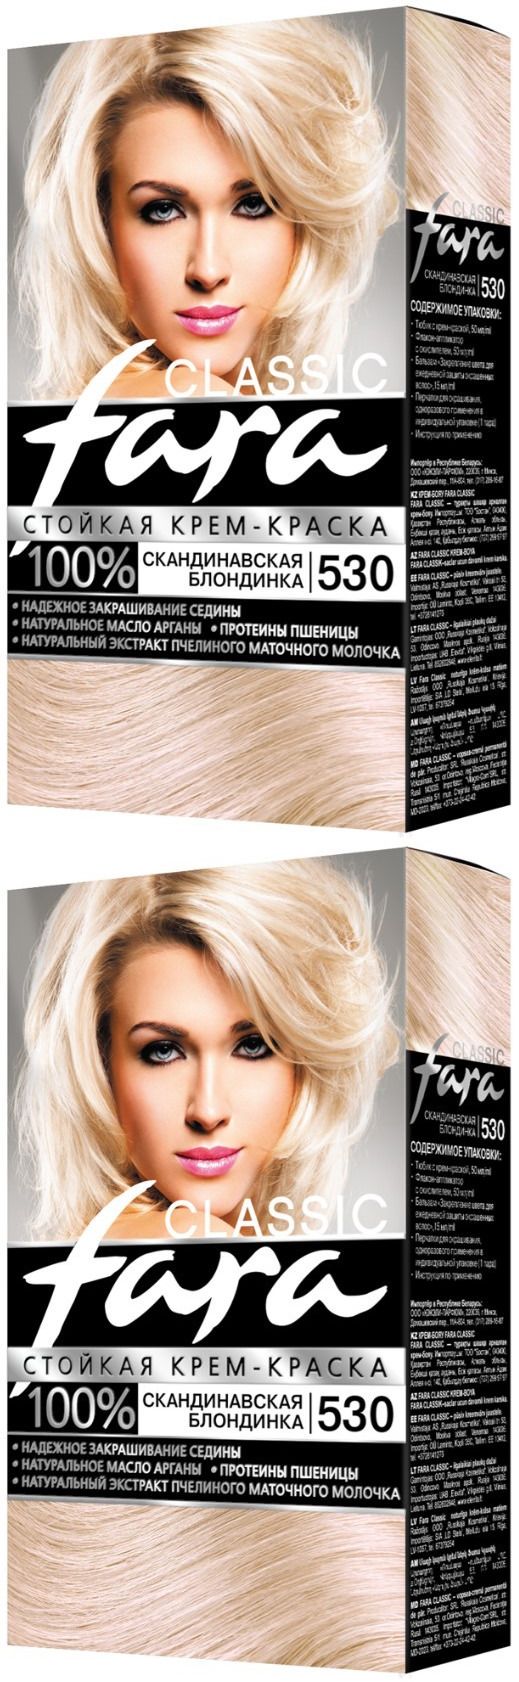 Краска для волос Fara Classic, тон 530, скандинавская блондинка, 2 шт.